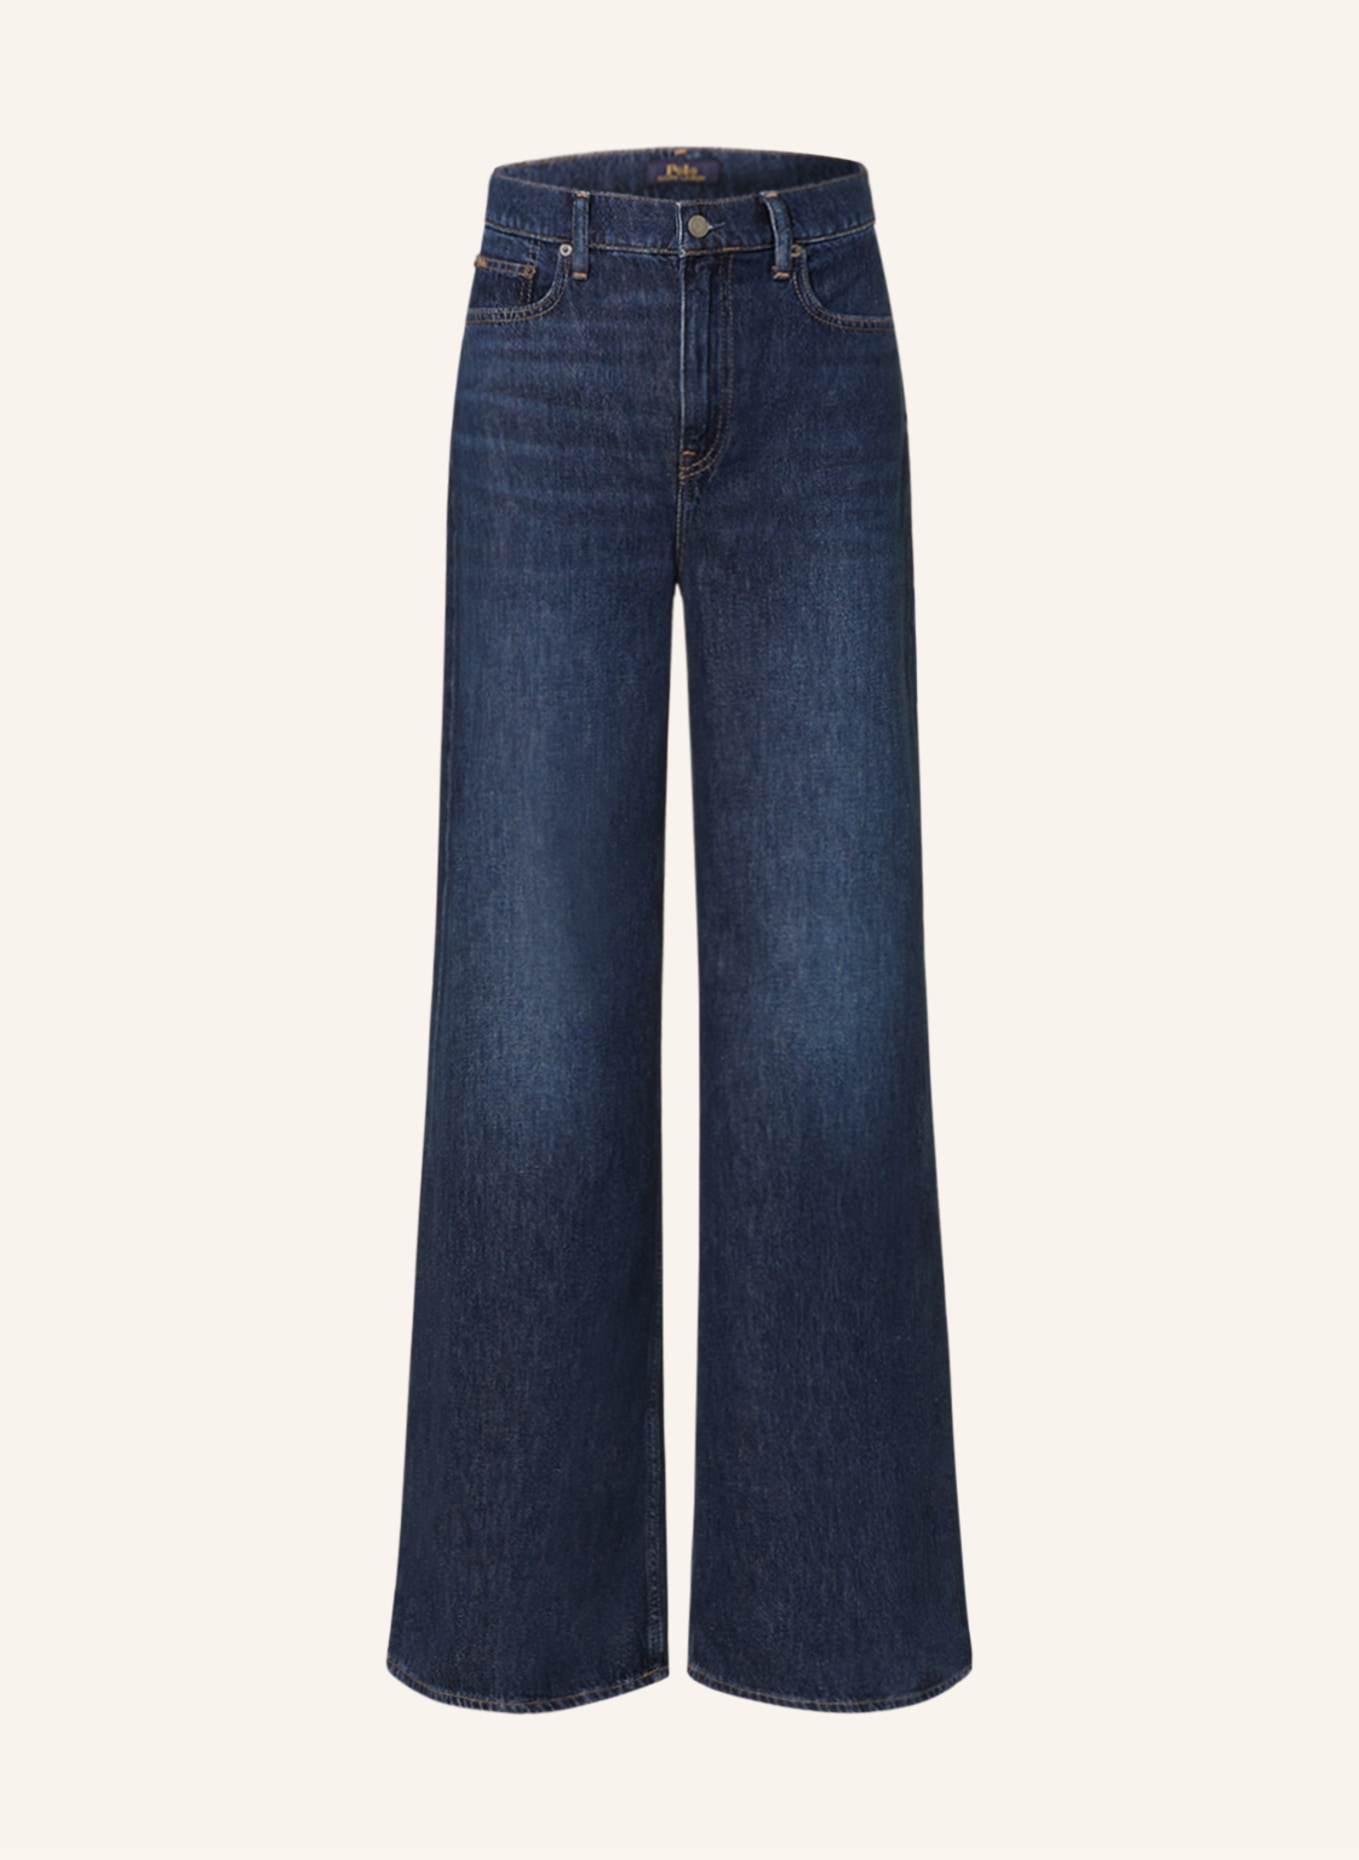 POLO RALPH LAUREN Flared Jeans, Farbe: 001 AYORA WASH (Bild 1)